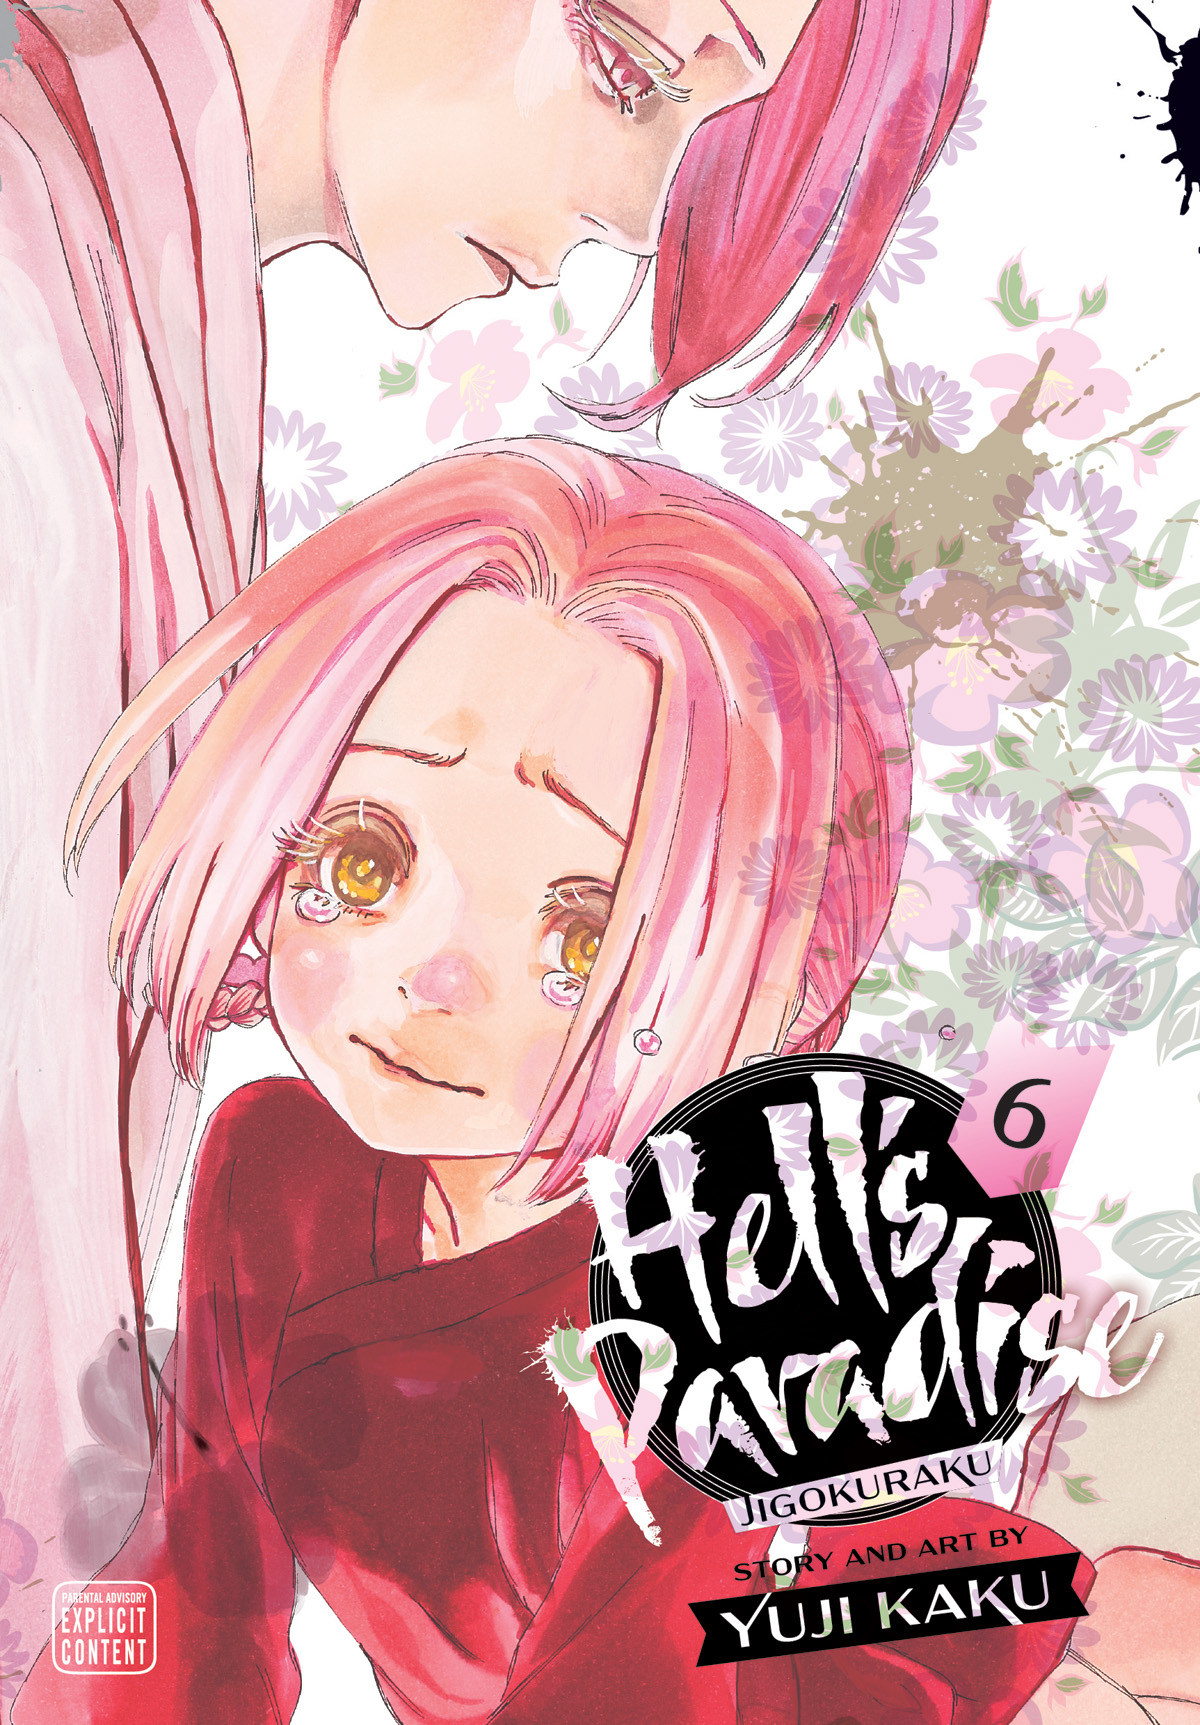 Hell's Paradise: Jigokuraku】Ninja×Battle